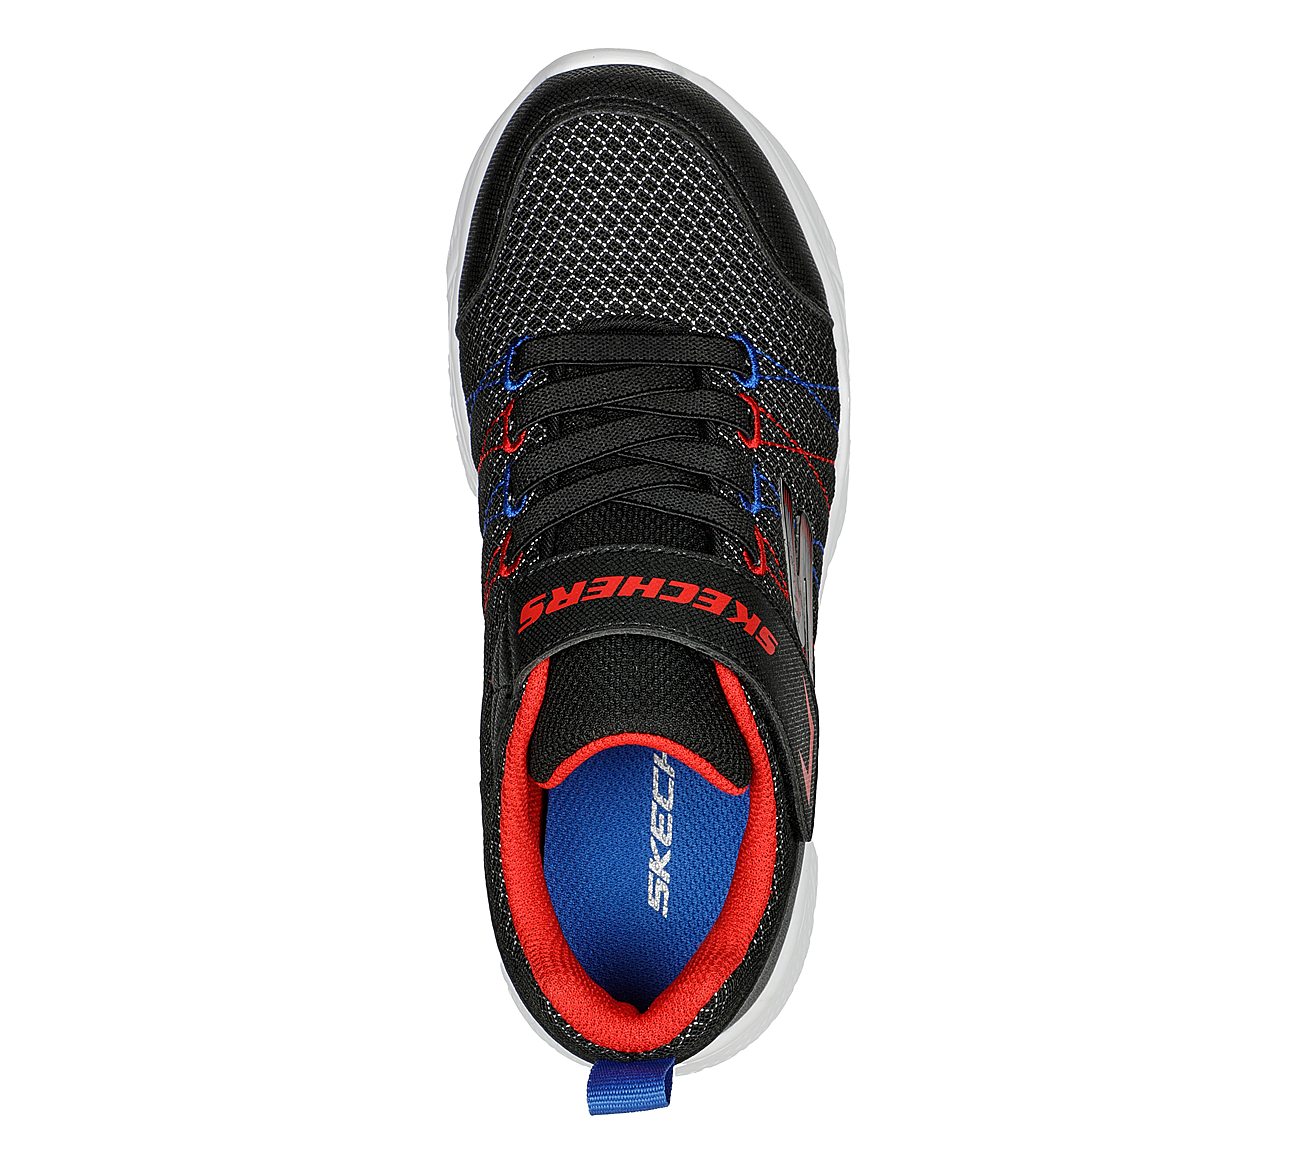 SNAP SPRINTS 2, BLACK/RED/BLUE Footwear Top View